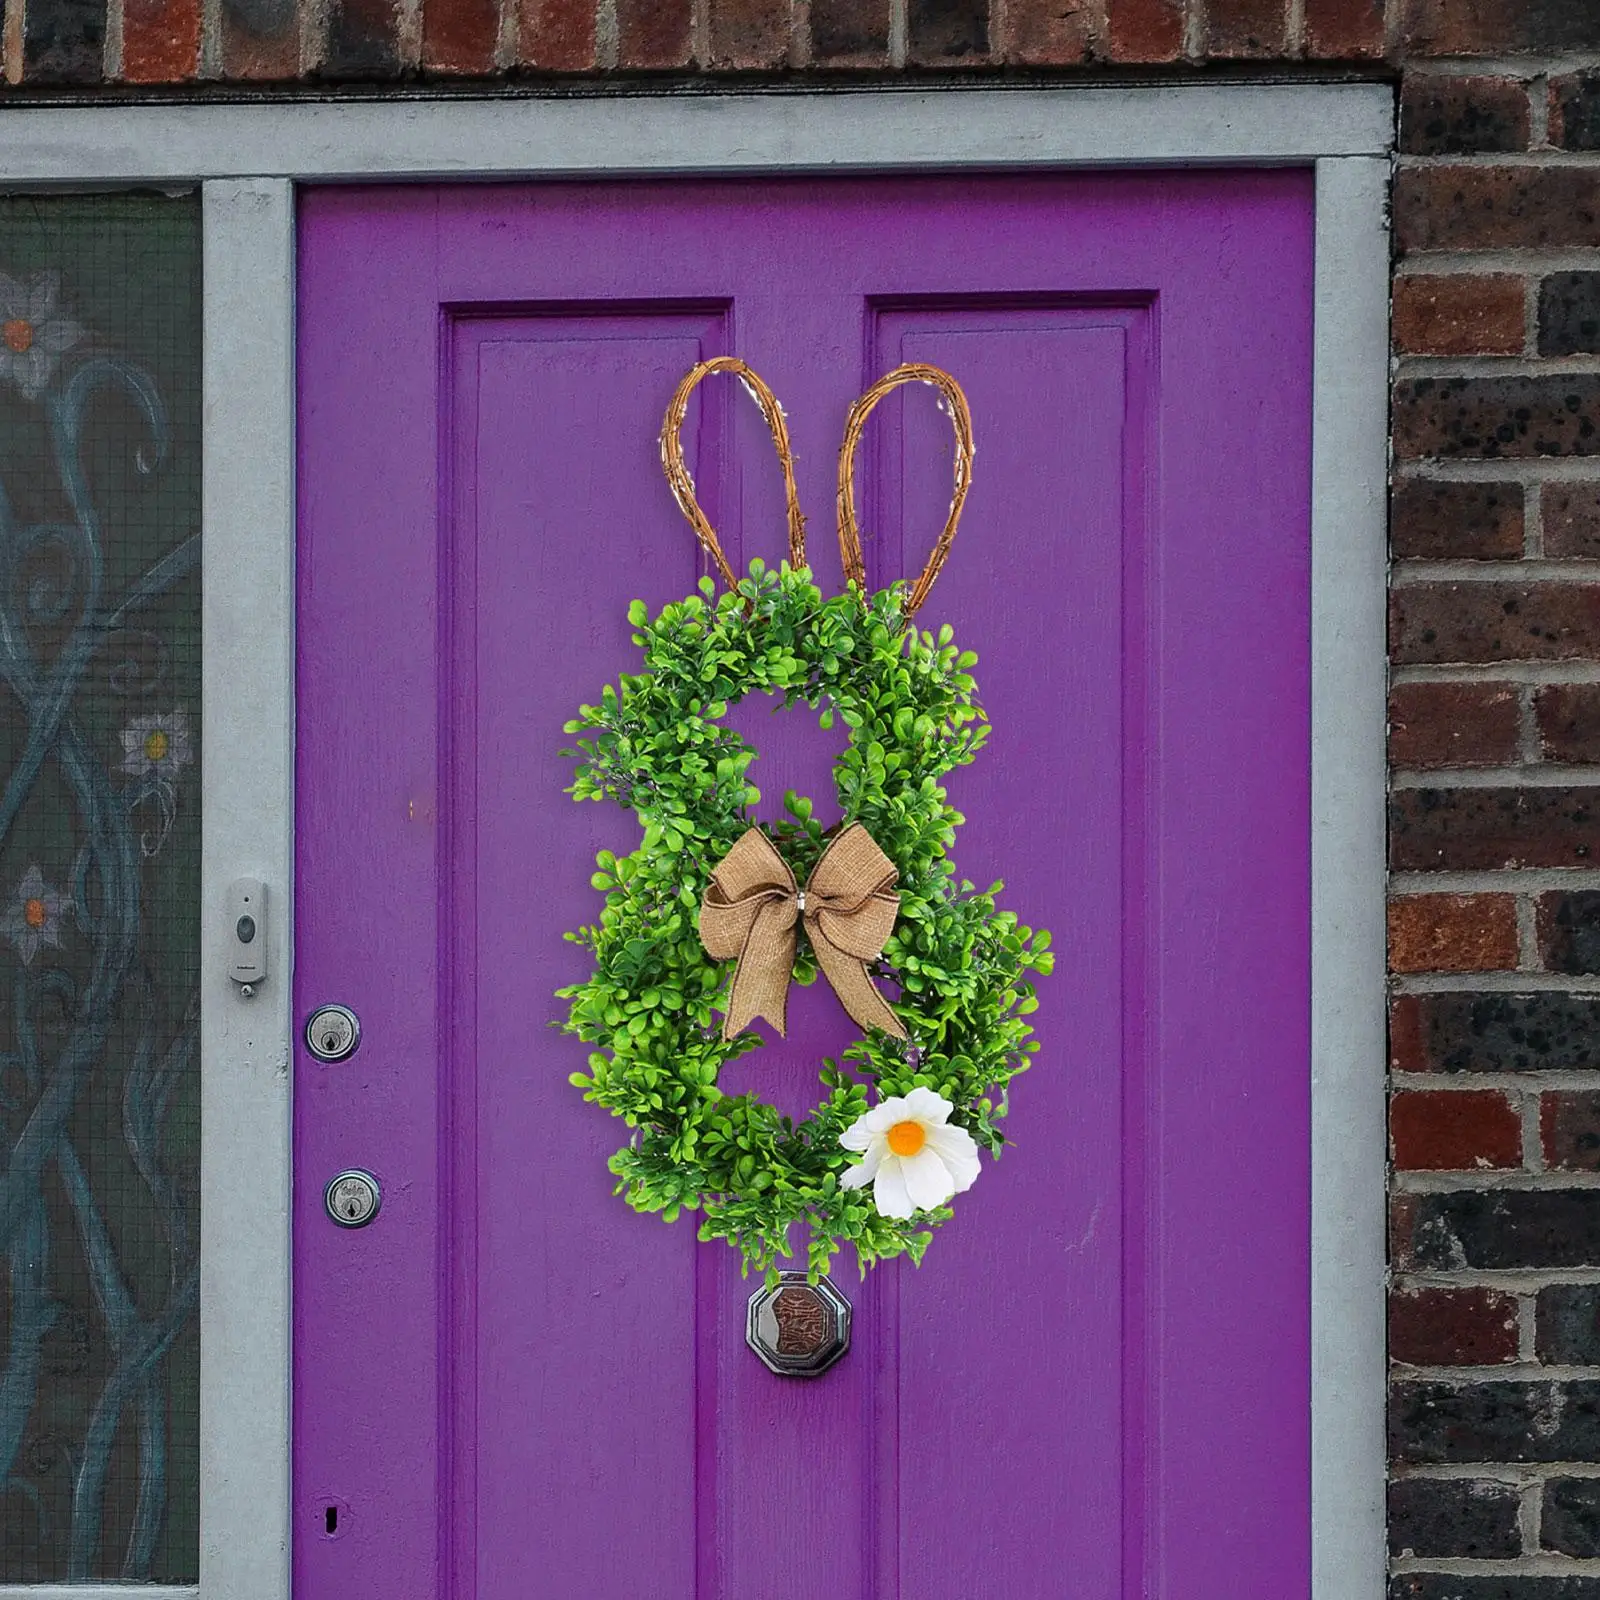 

Пасхальный венок кролика с бантом, искусственные зеленые листья, гирлянда для входной двери, для дома, улицы, праздника пасхи